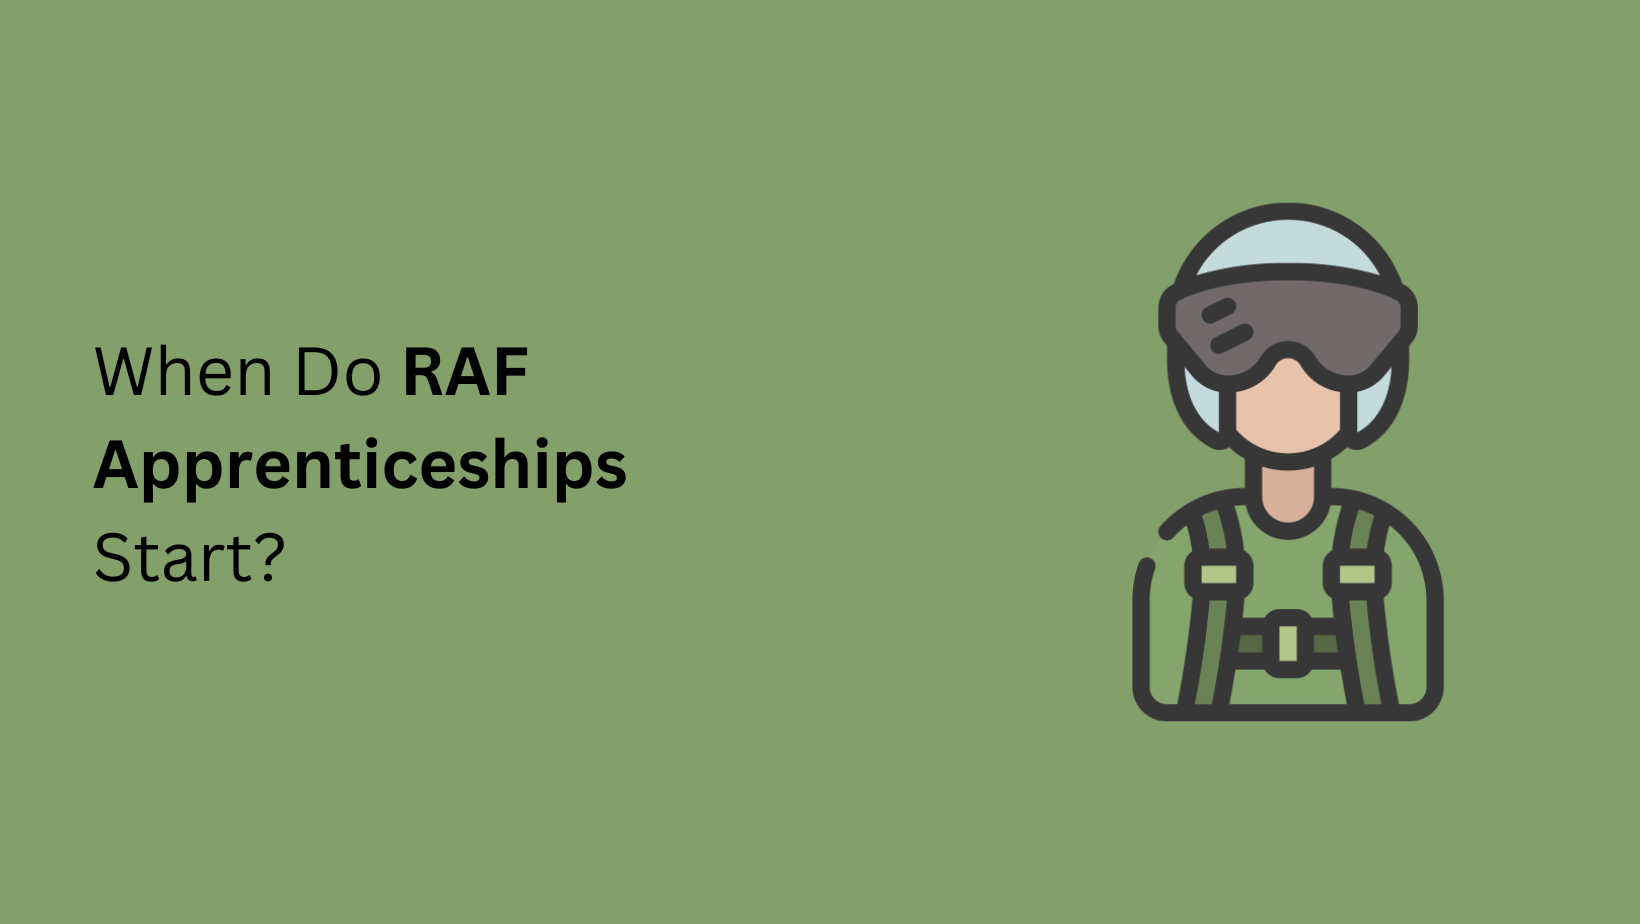 When Do RAF Apprenticeships Start